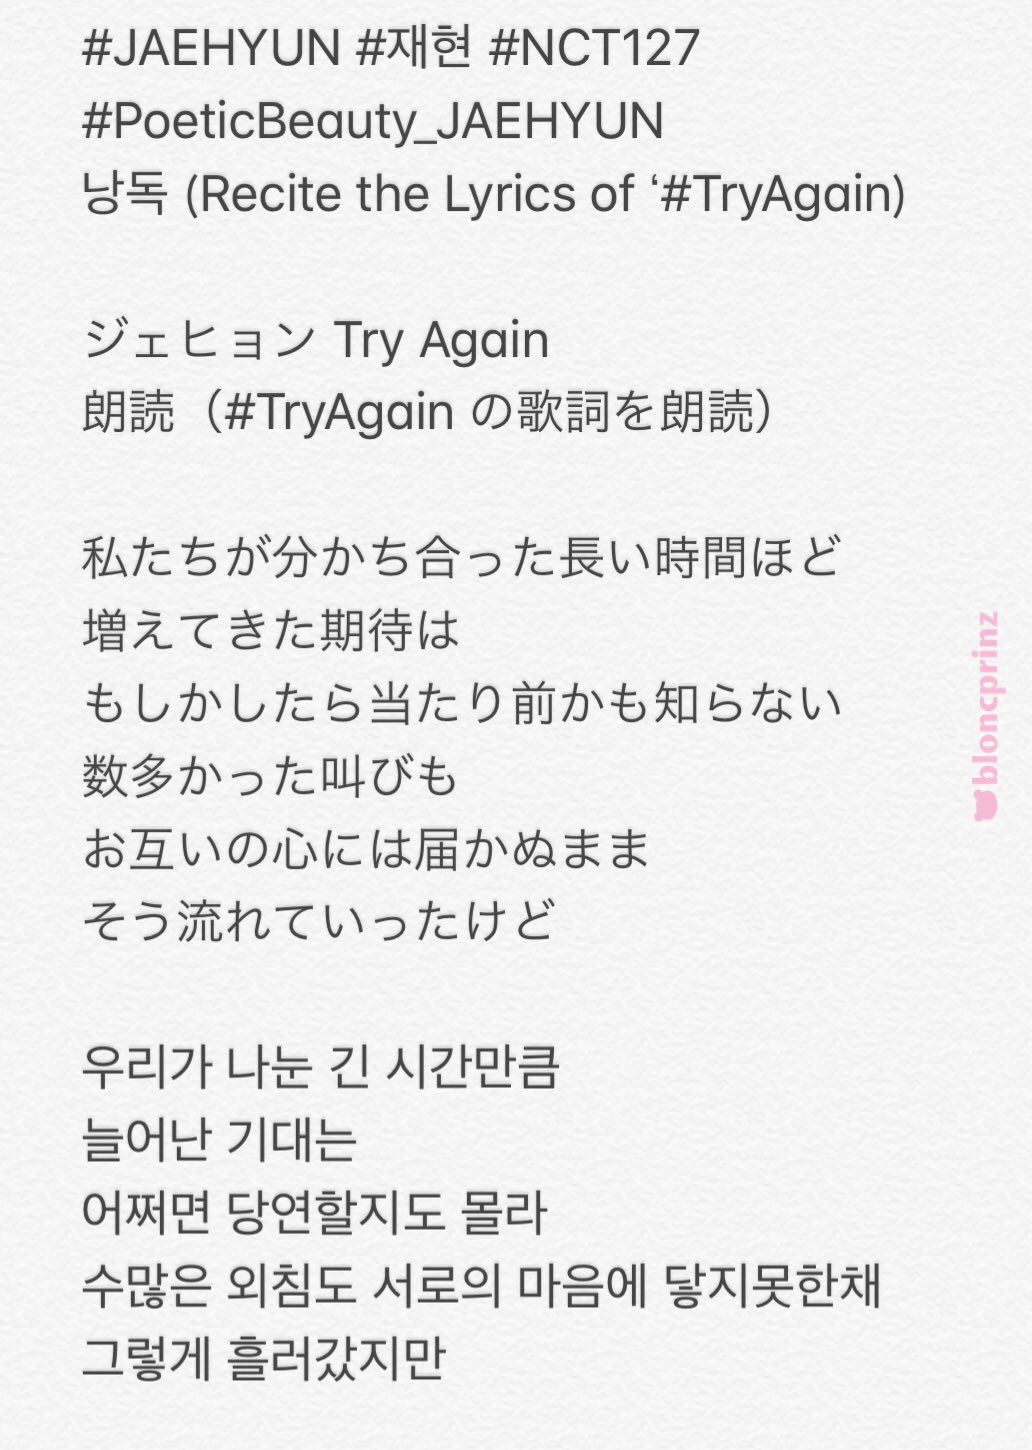 Try again jaehyun lyrics